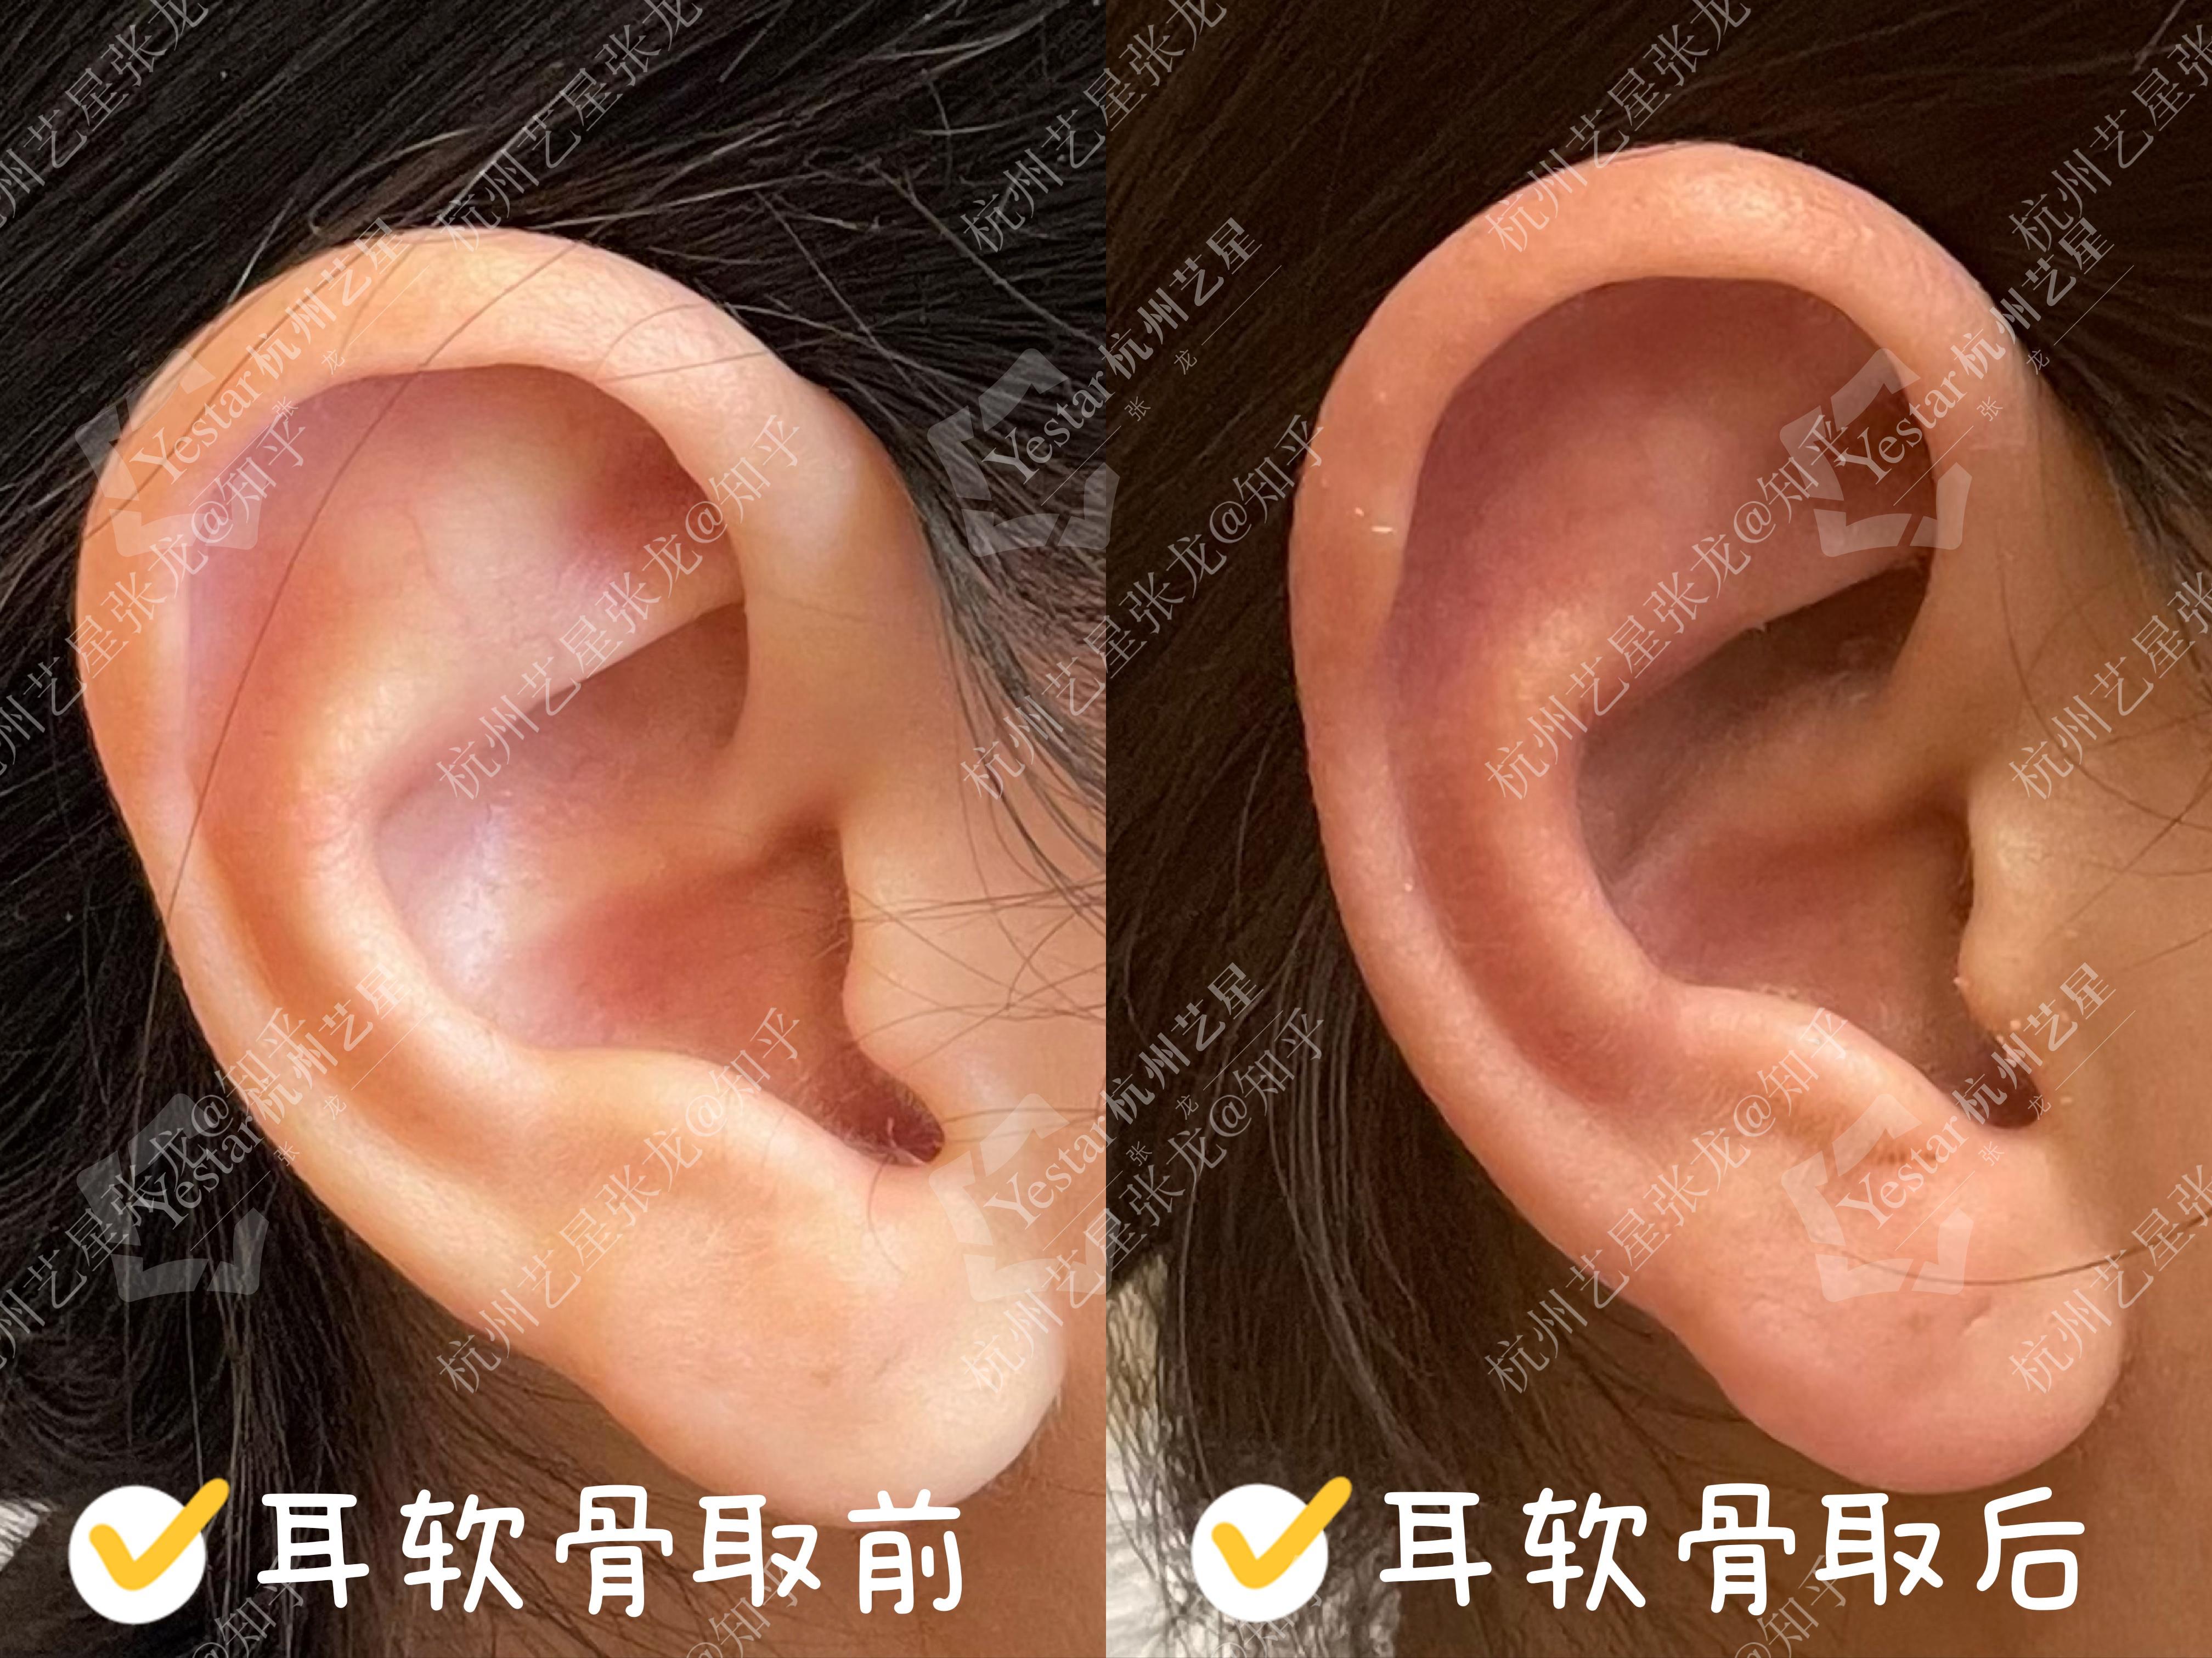 耳朵后面乳突骨图片-图库-五毛网